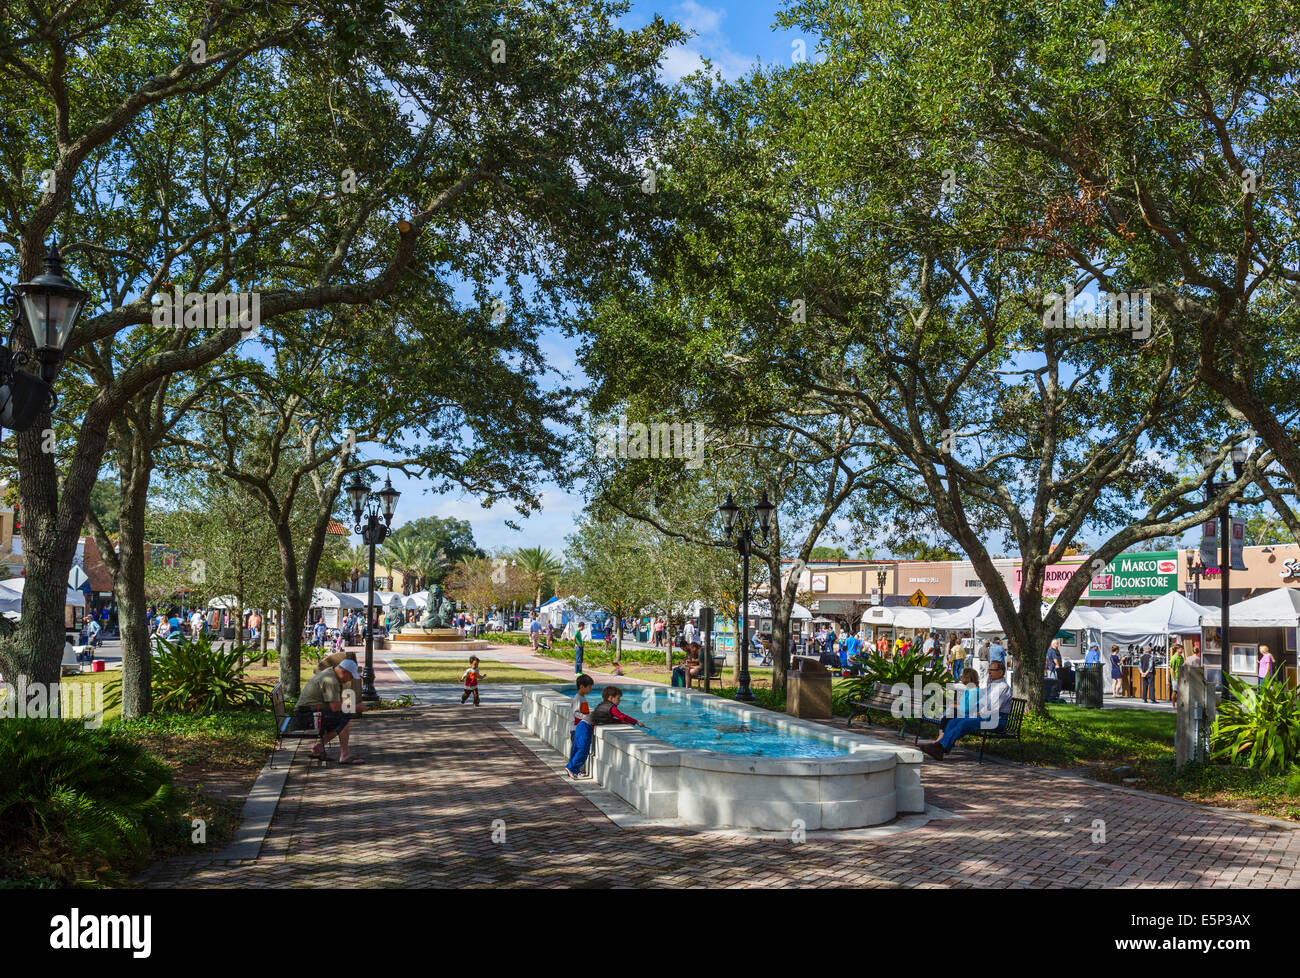 Le quartier de San Marco de Jacksonville pendant la San Marco Art Festival en novembre 2013, Florida, USA Banque D'Images